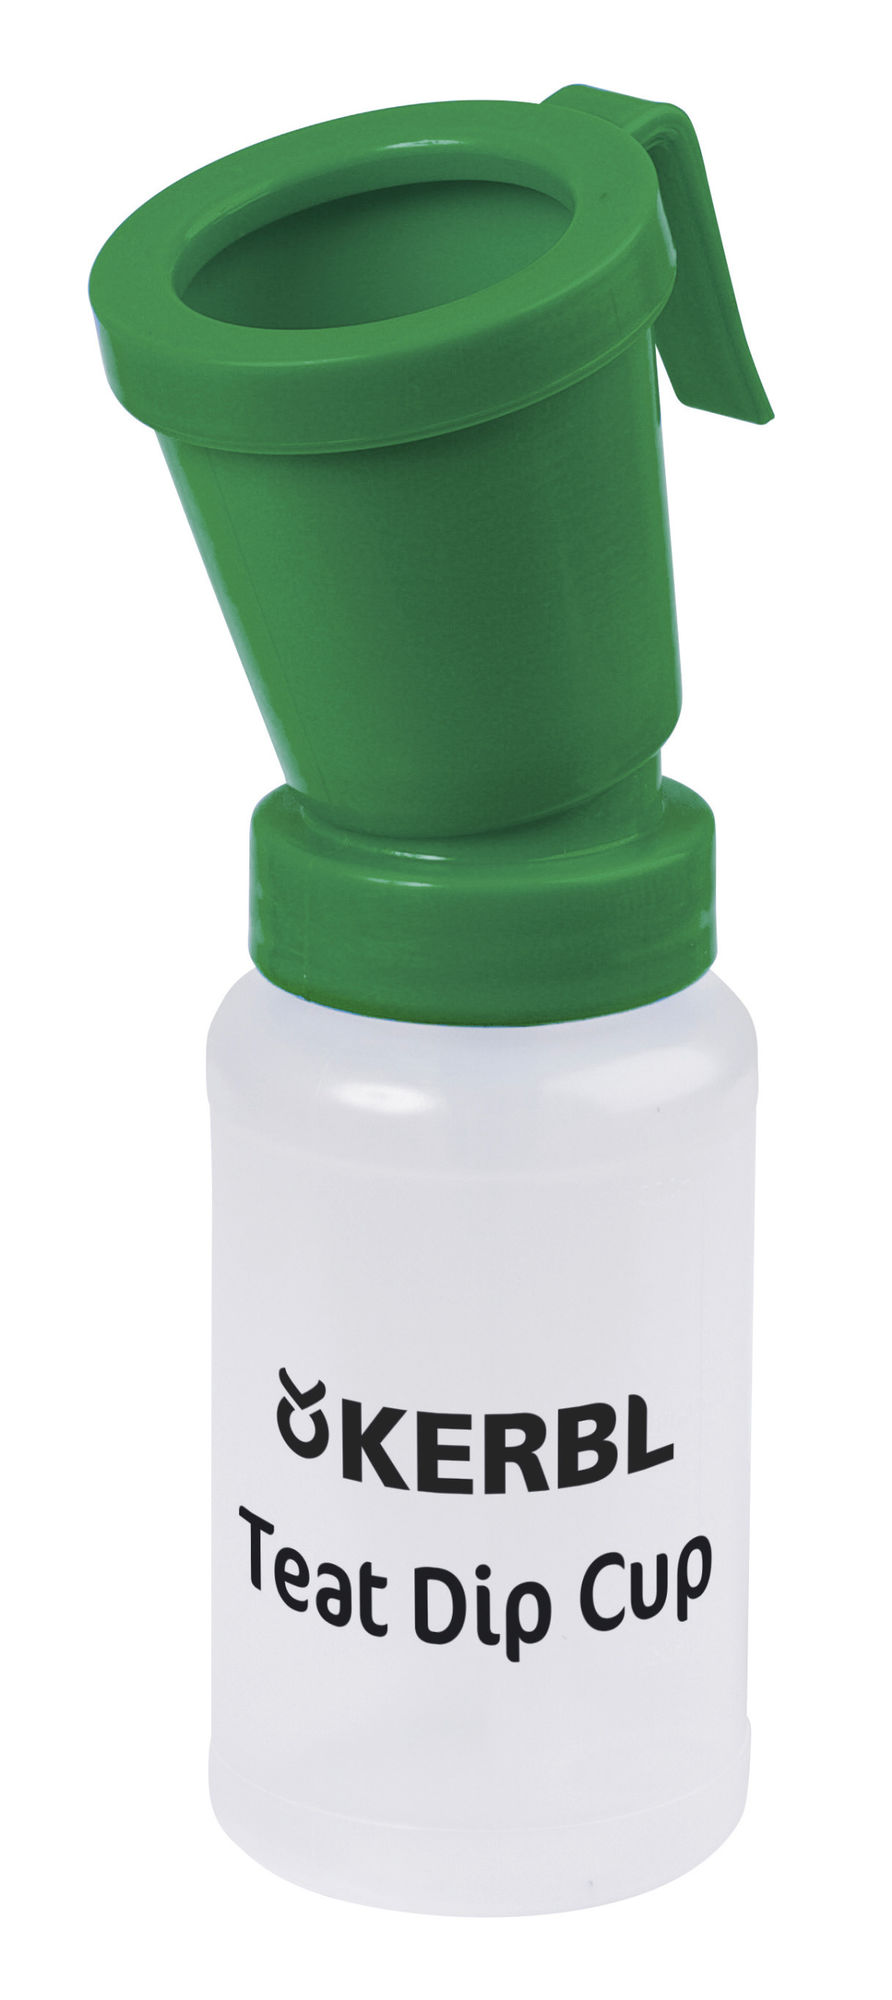 Kerbl Dippbecher Standard, grün